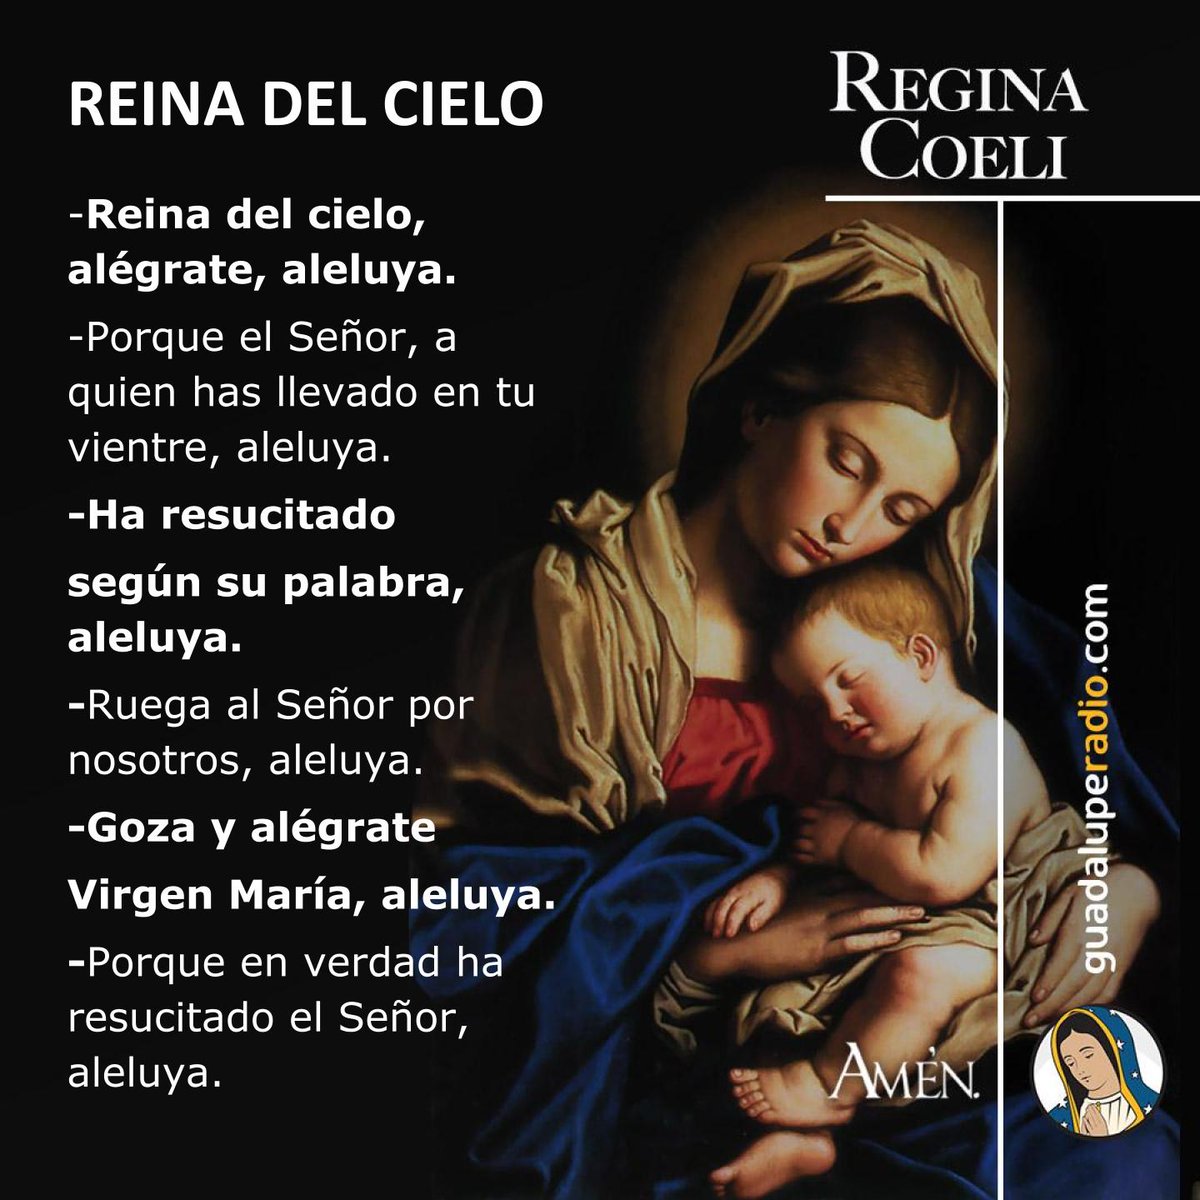 ¡Alégrate, Reina del Cielo!
#GuadalupeRadio
#ReginaCoeli